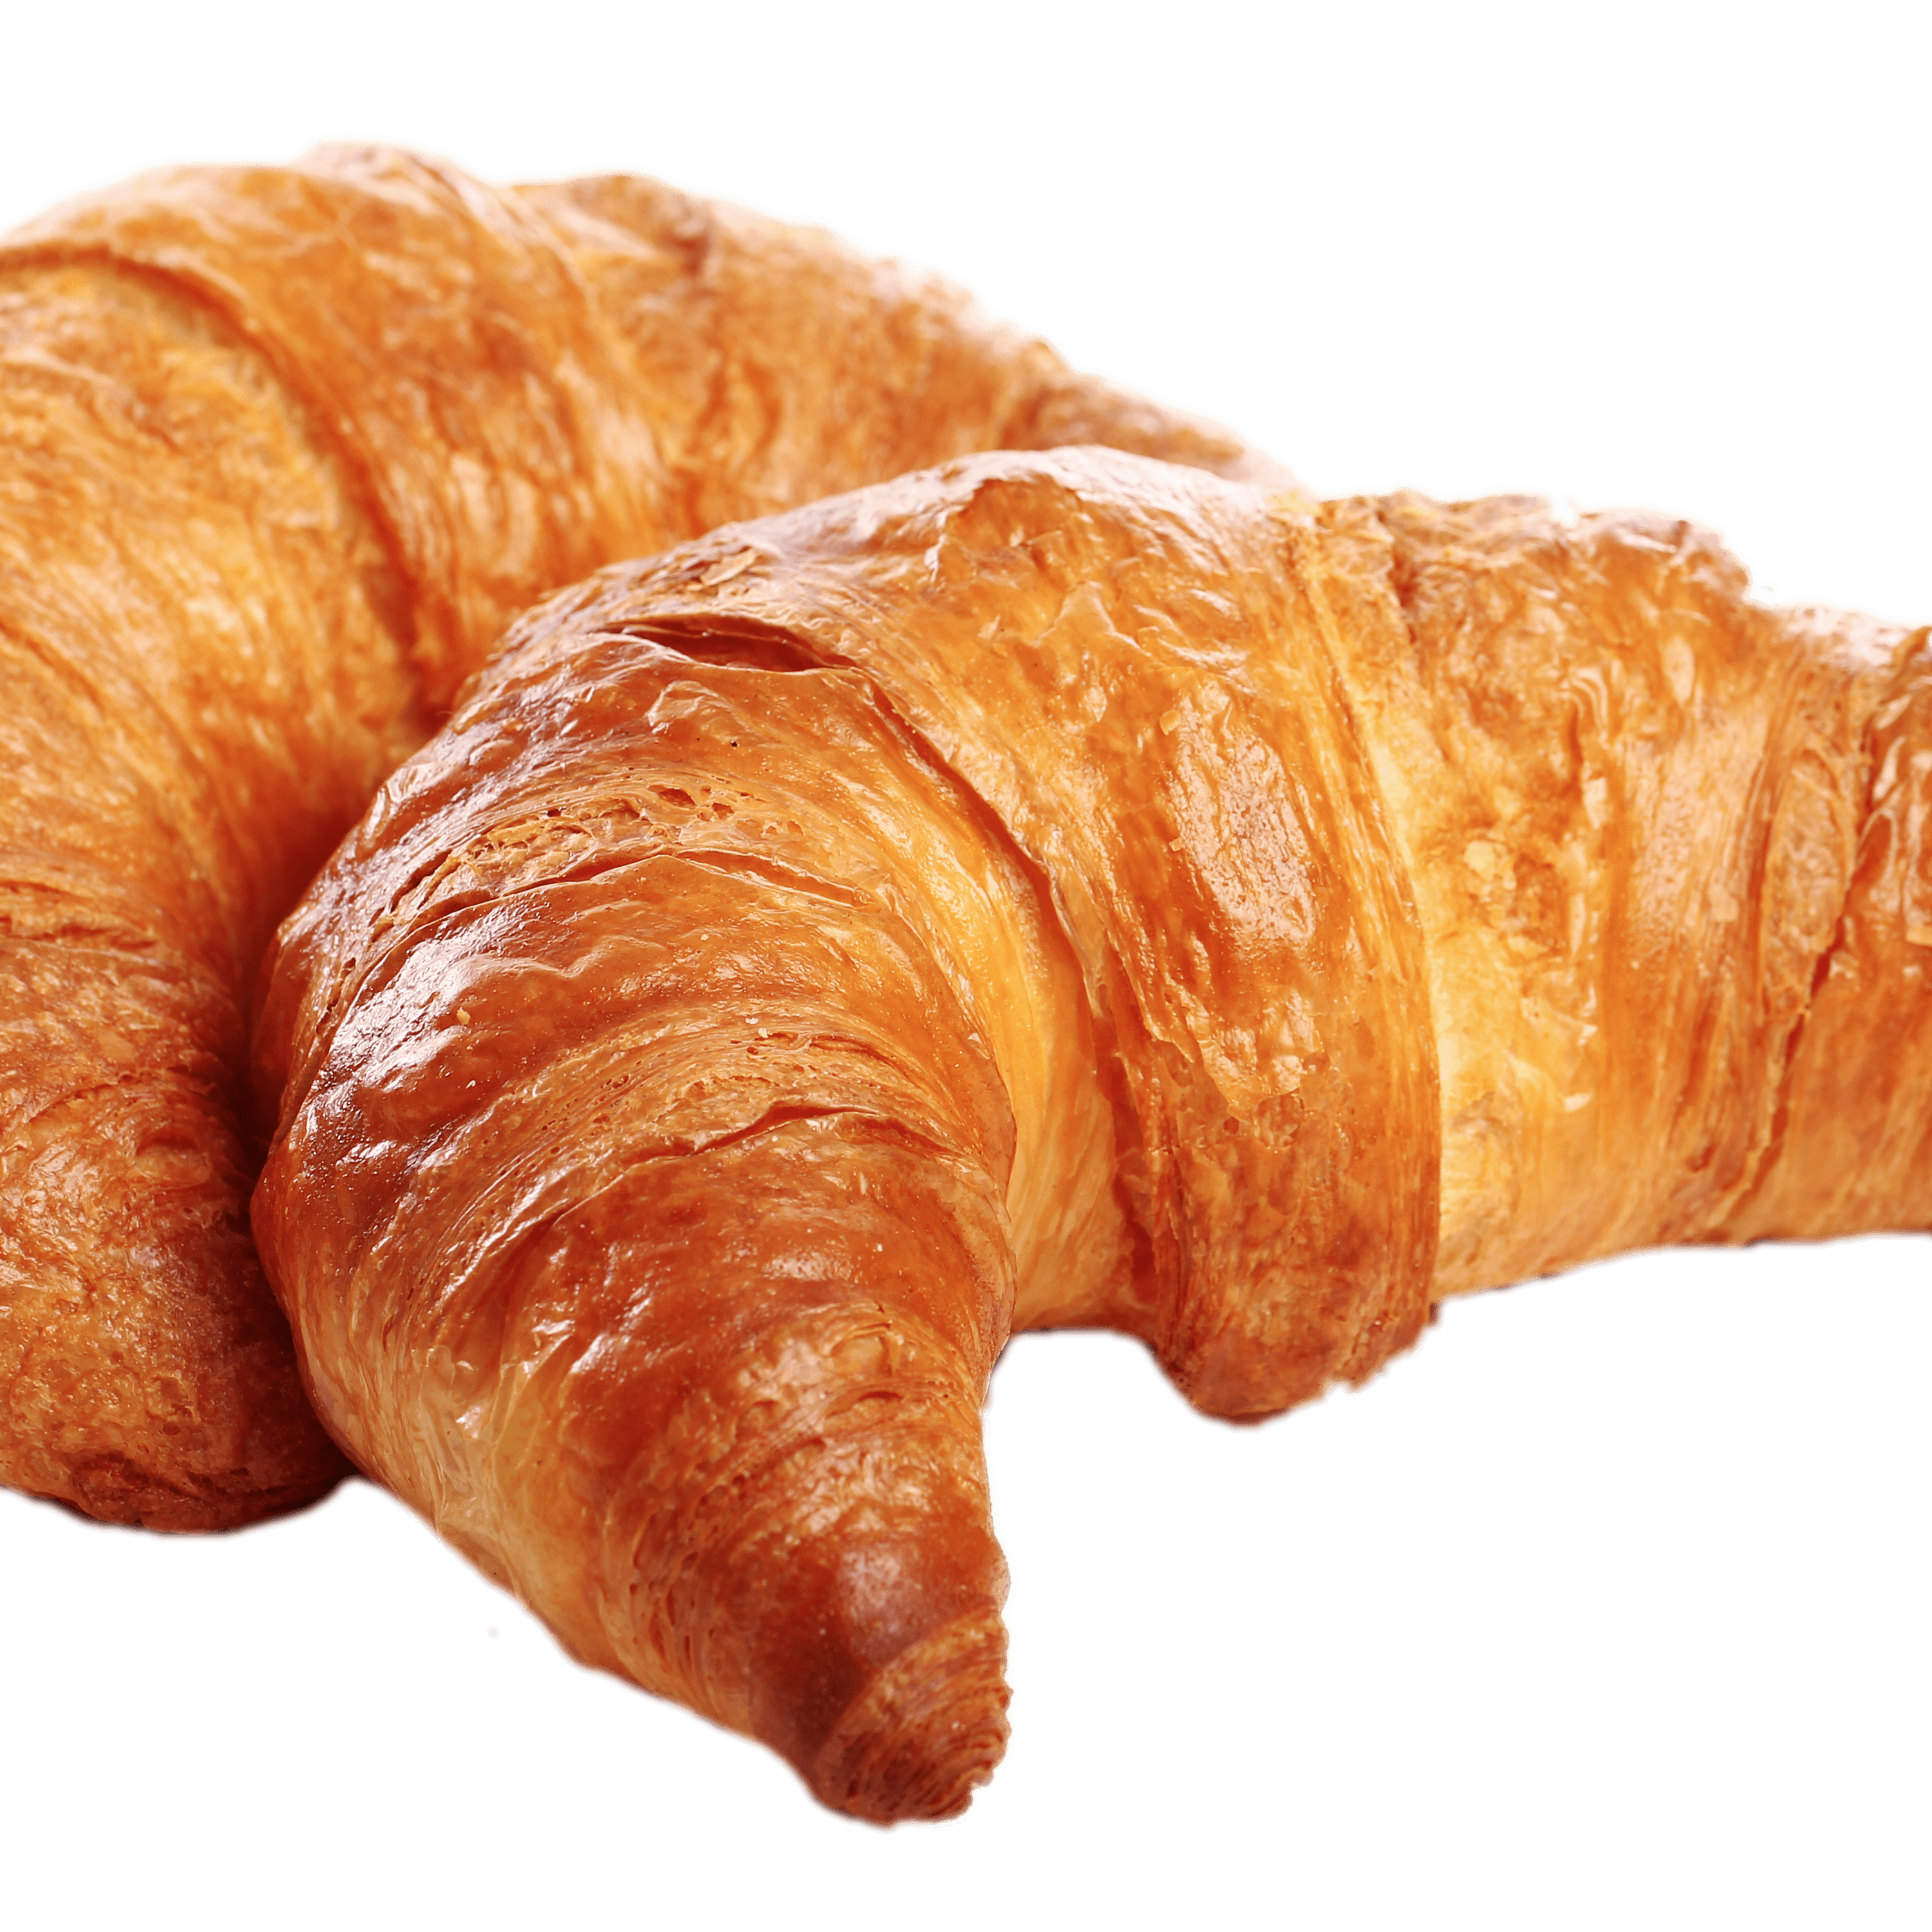 Croissant Bread Transparent Image